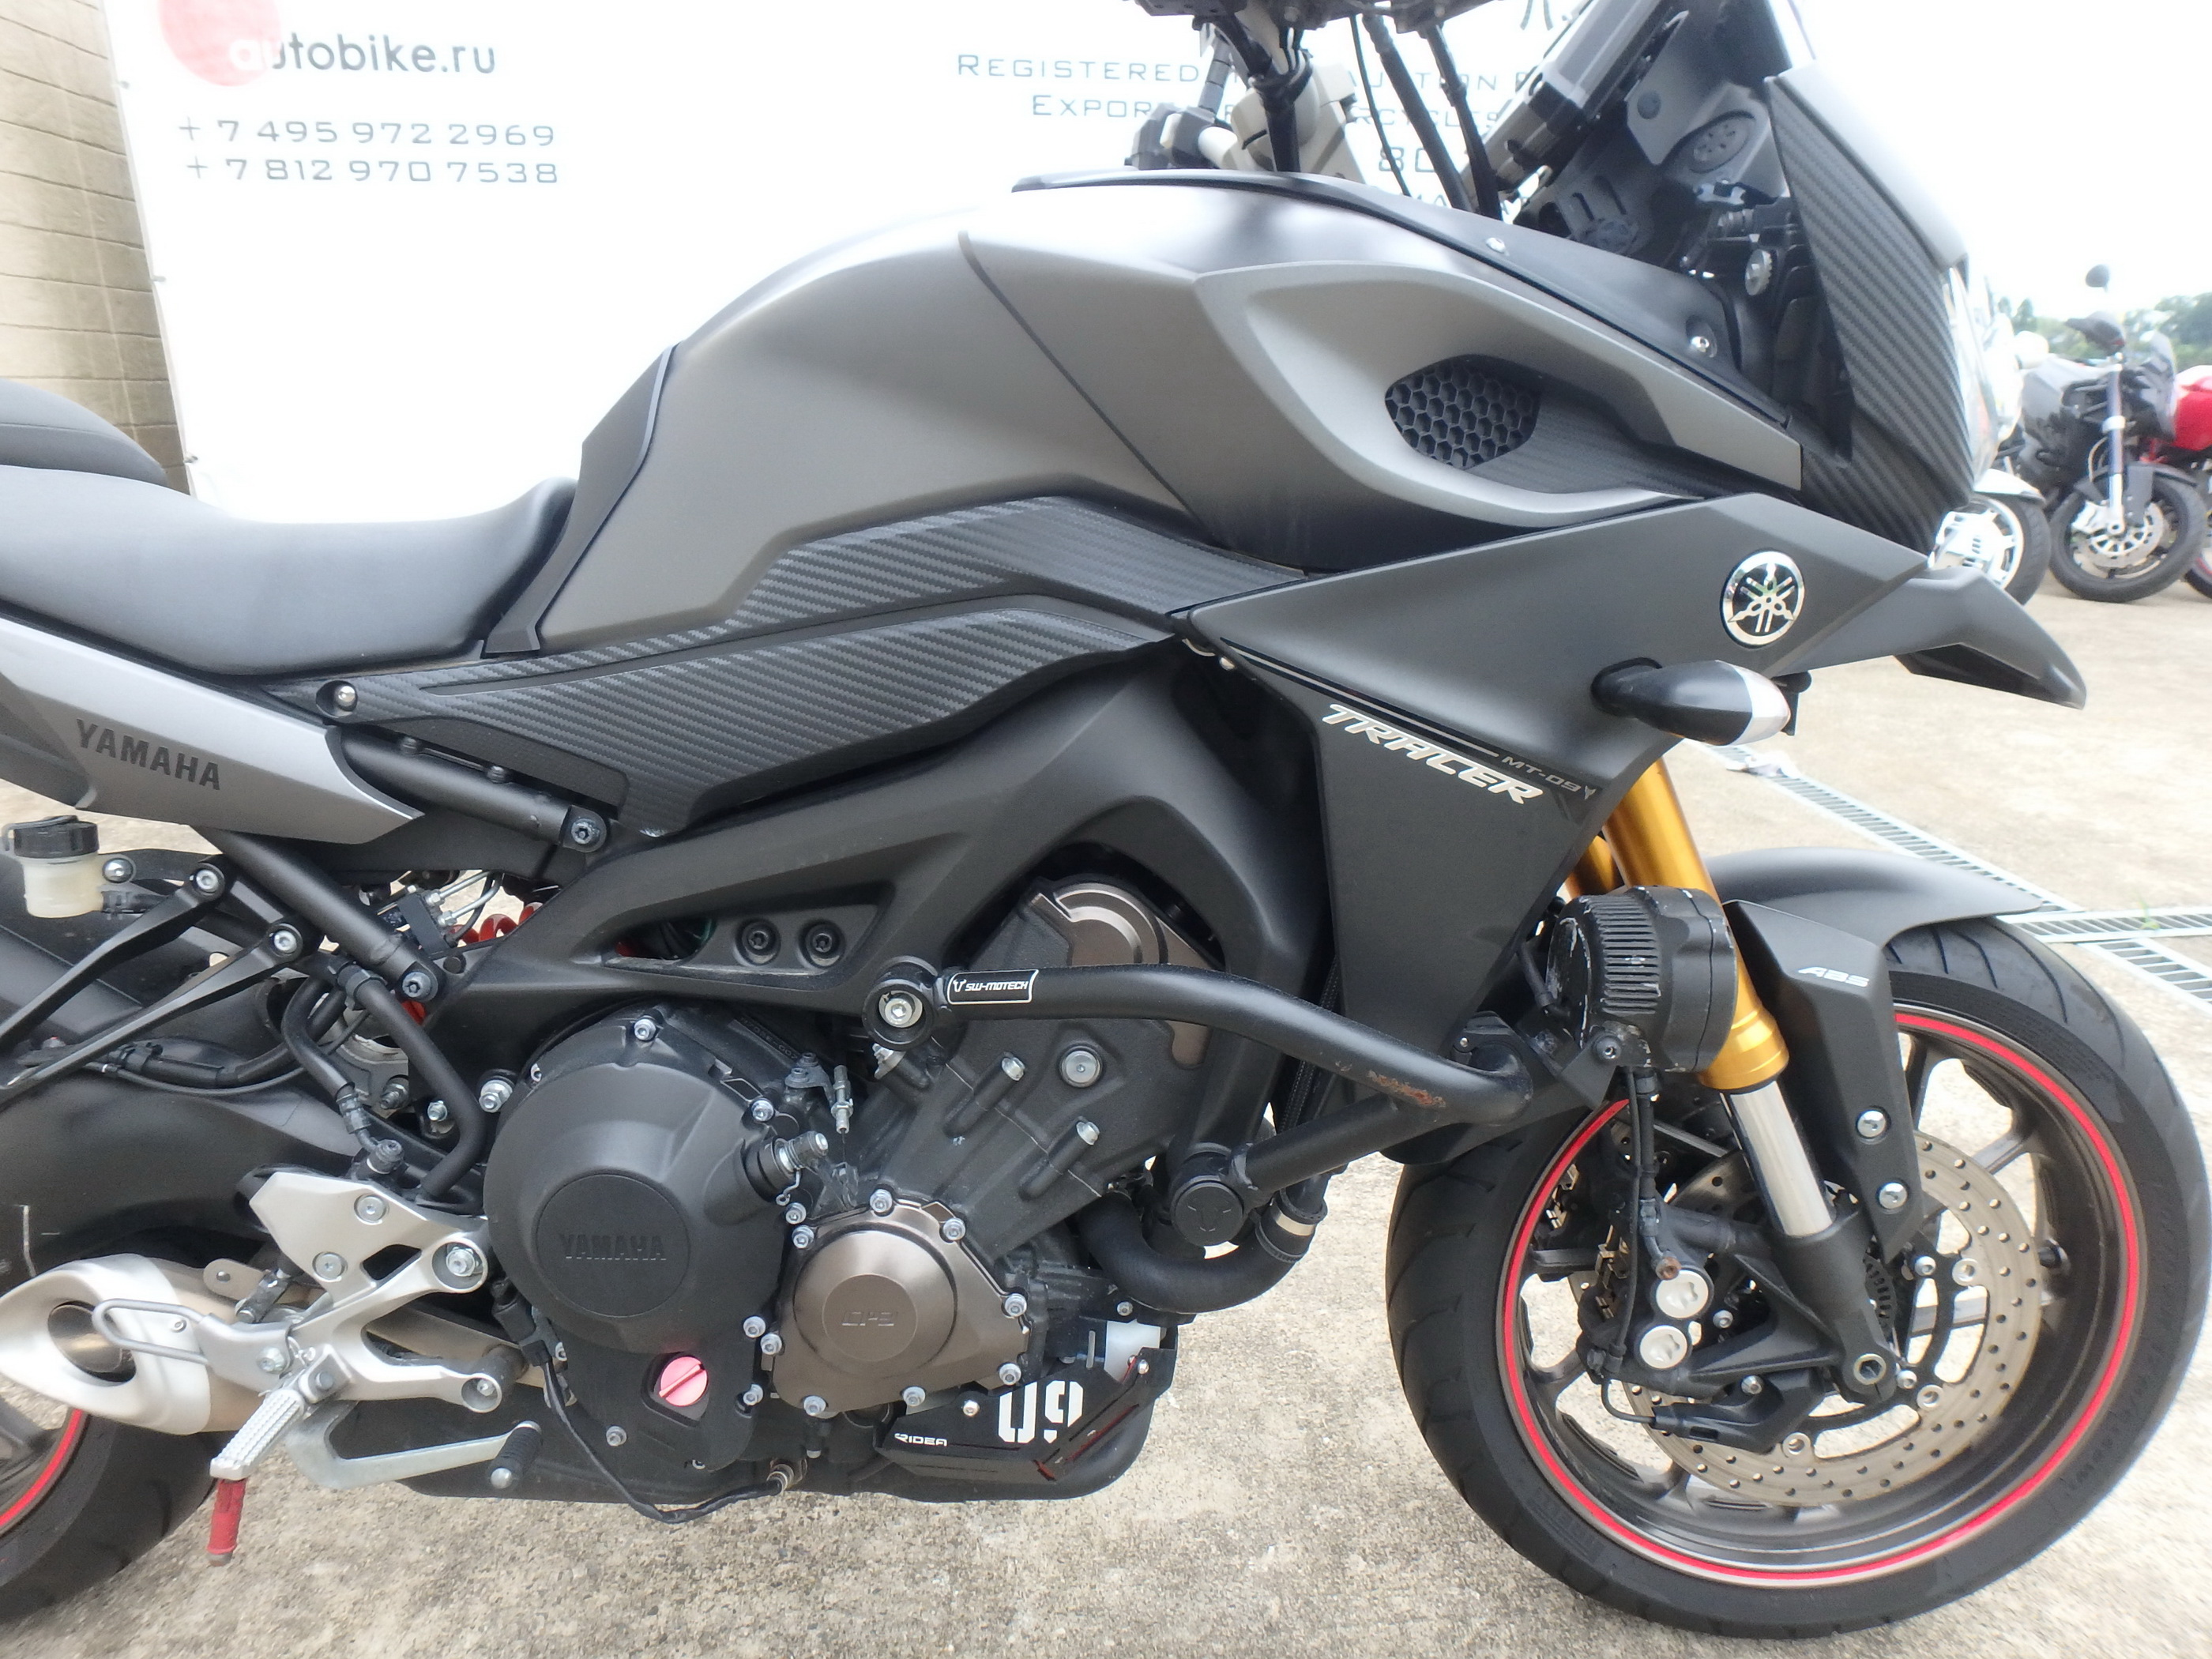 Купить мотоцикл Yamaha MT-09 Tracer FJ-09 2015 фото 18